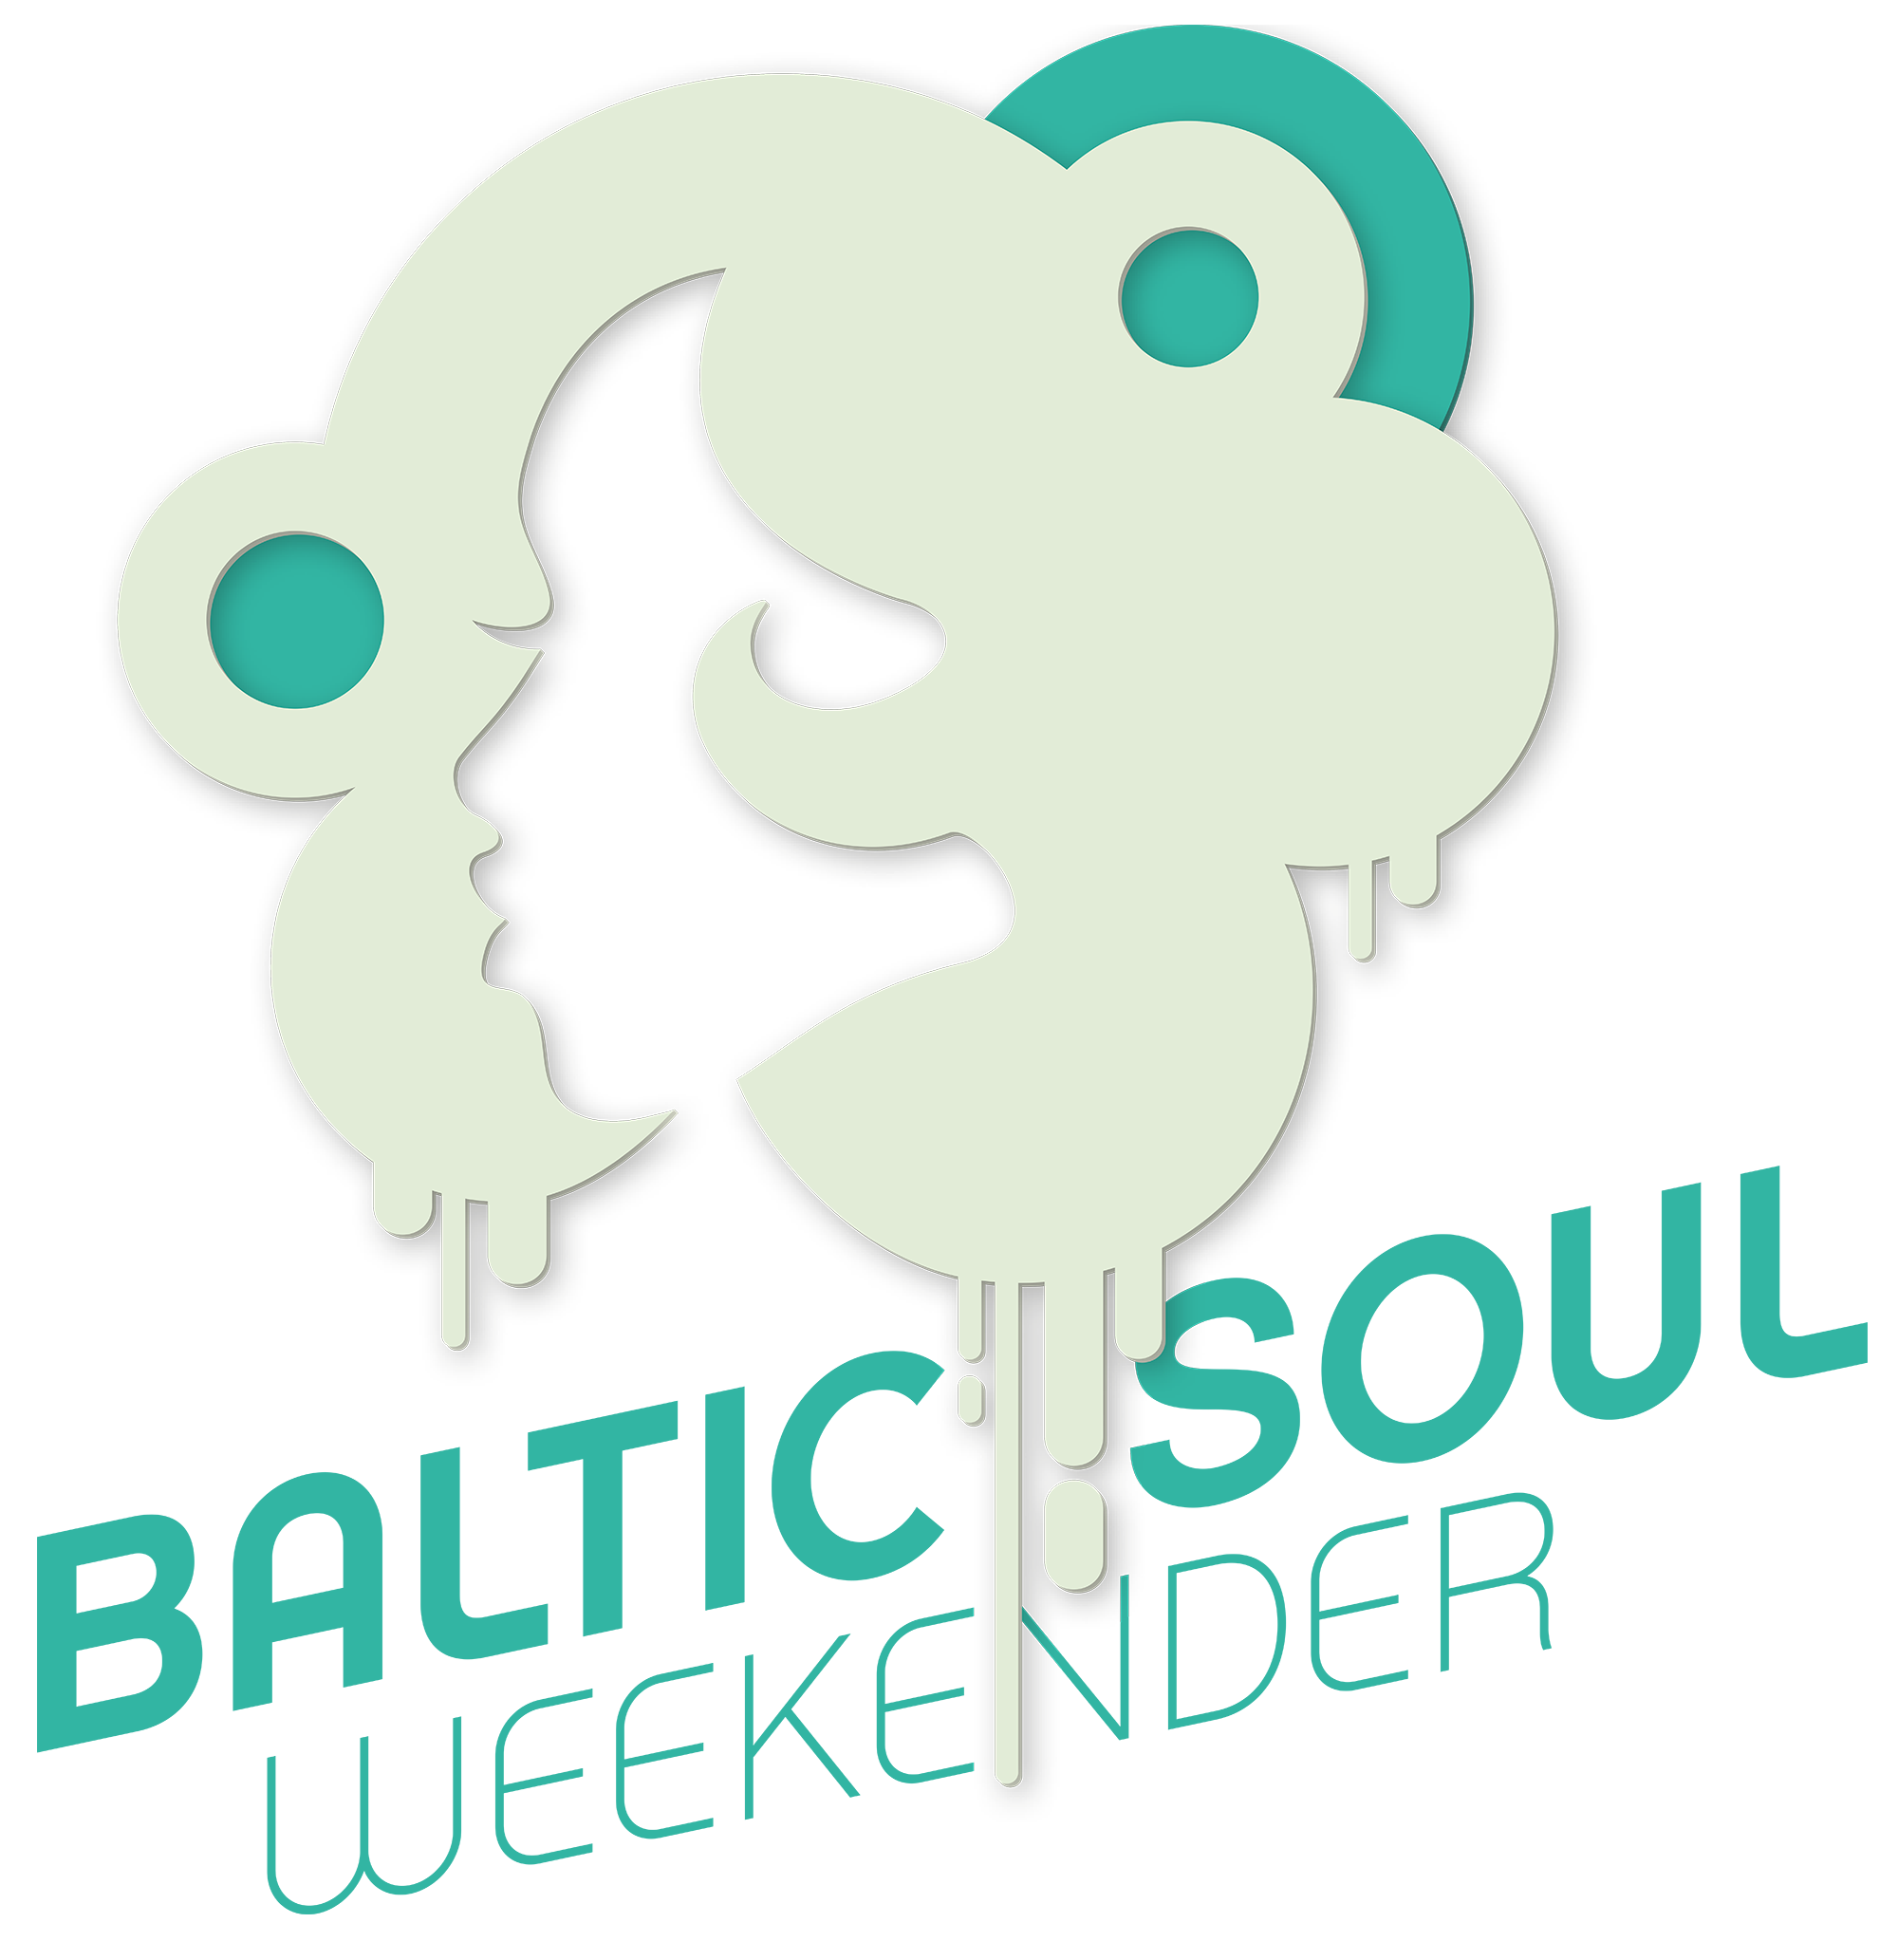 Baltic Soul Weekender Shop